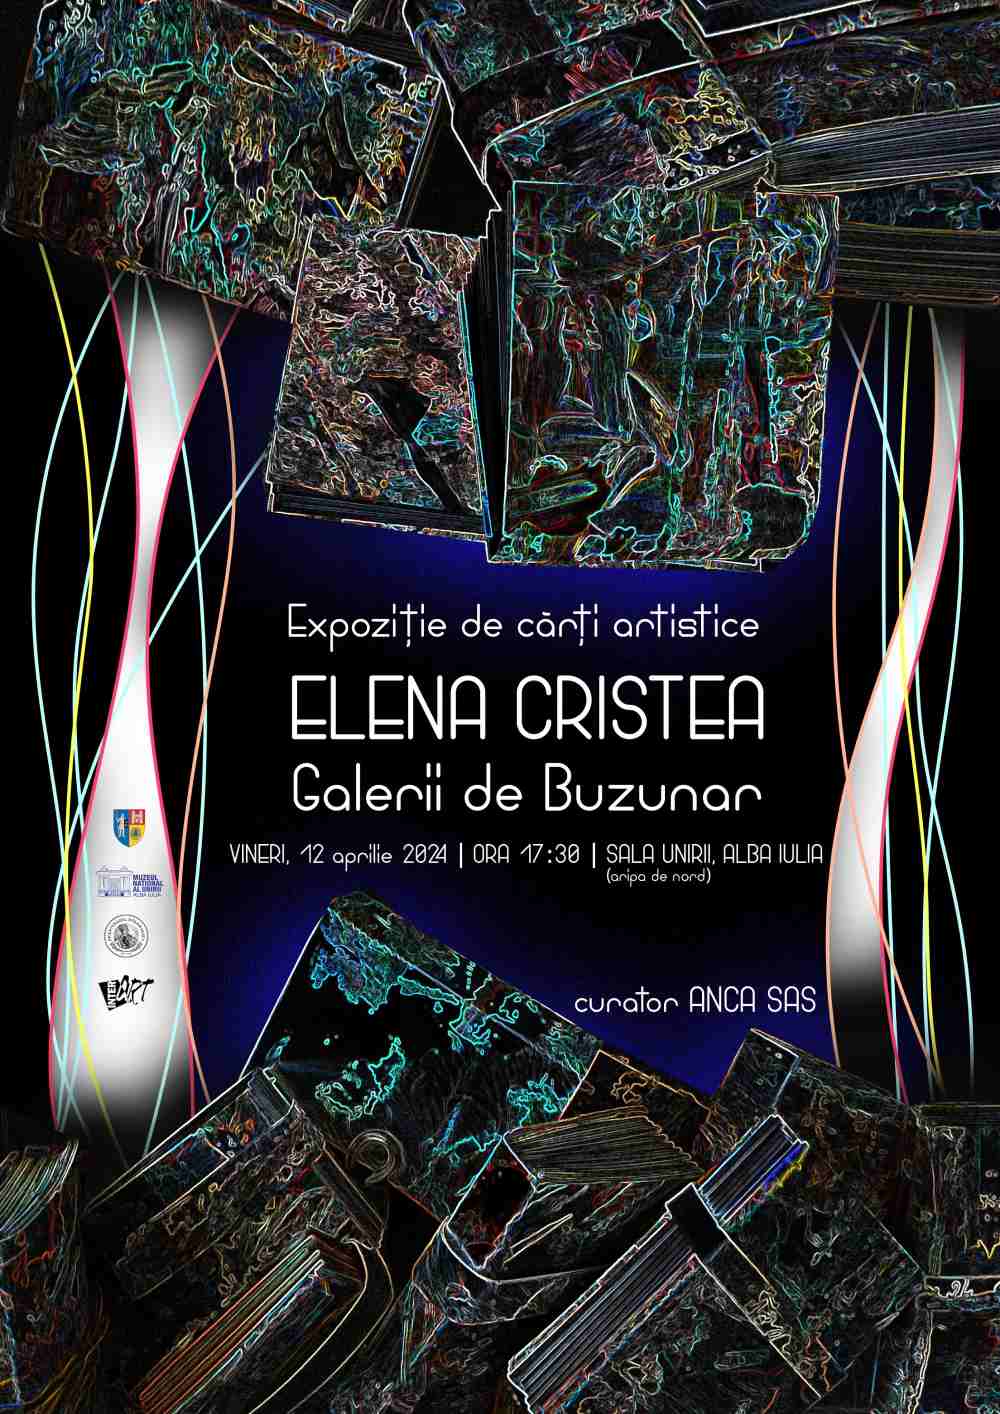 ,,Galerii de buzunar” Expoziția de cărți artistice semnată de Elena Cristea